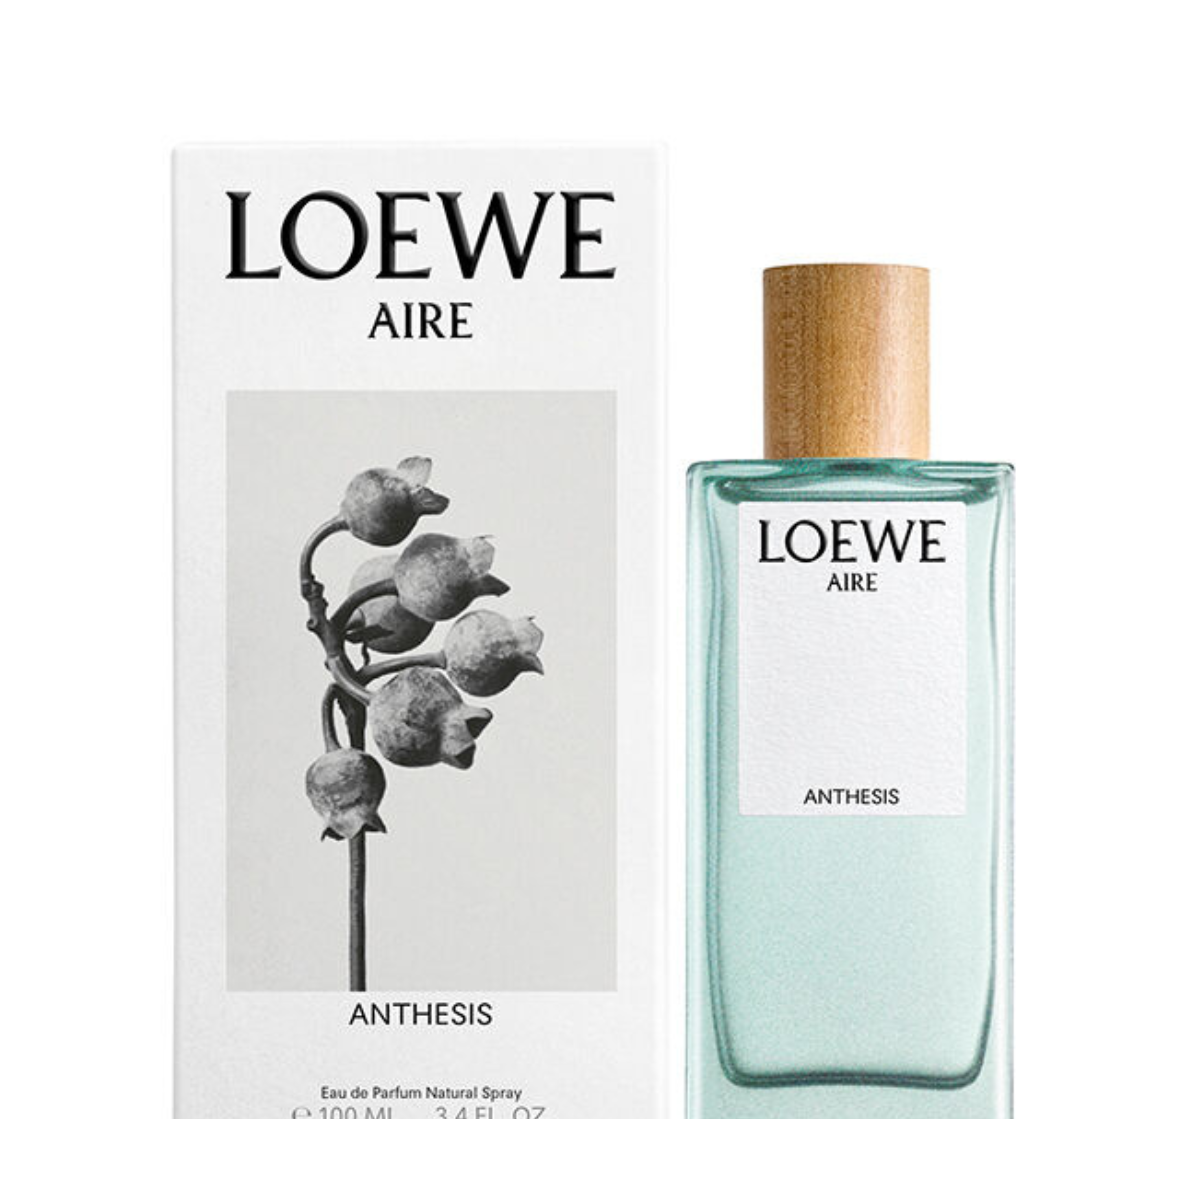 Loewe Aire Anthesis Eau de Parfum